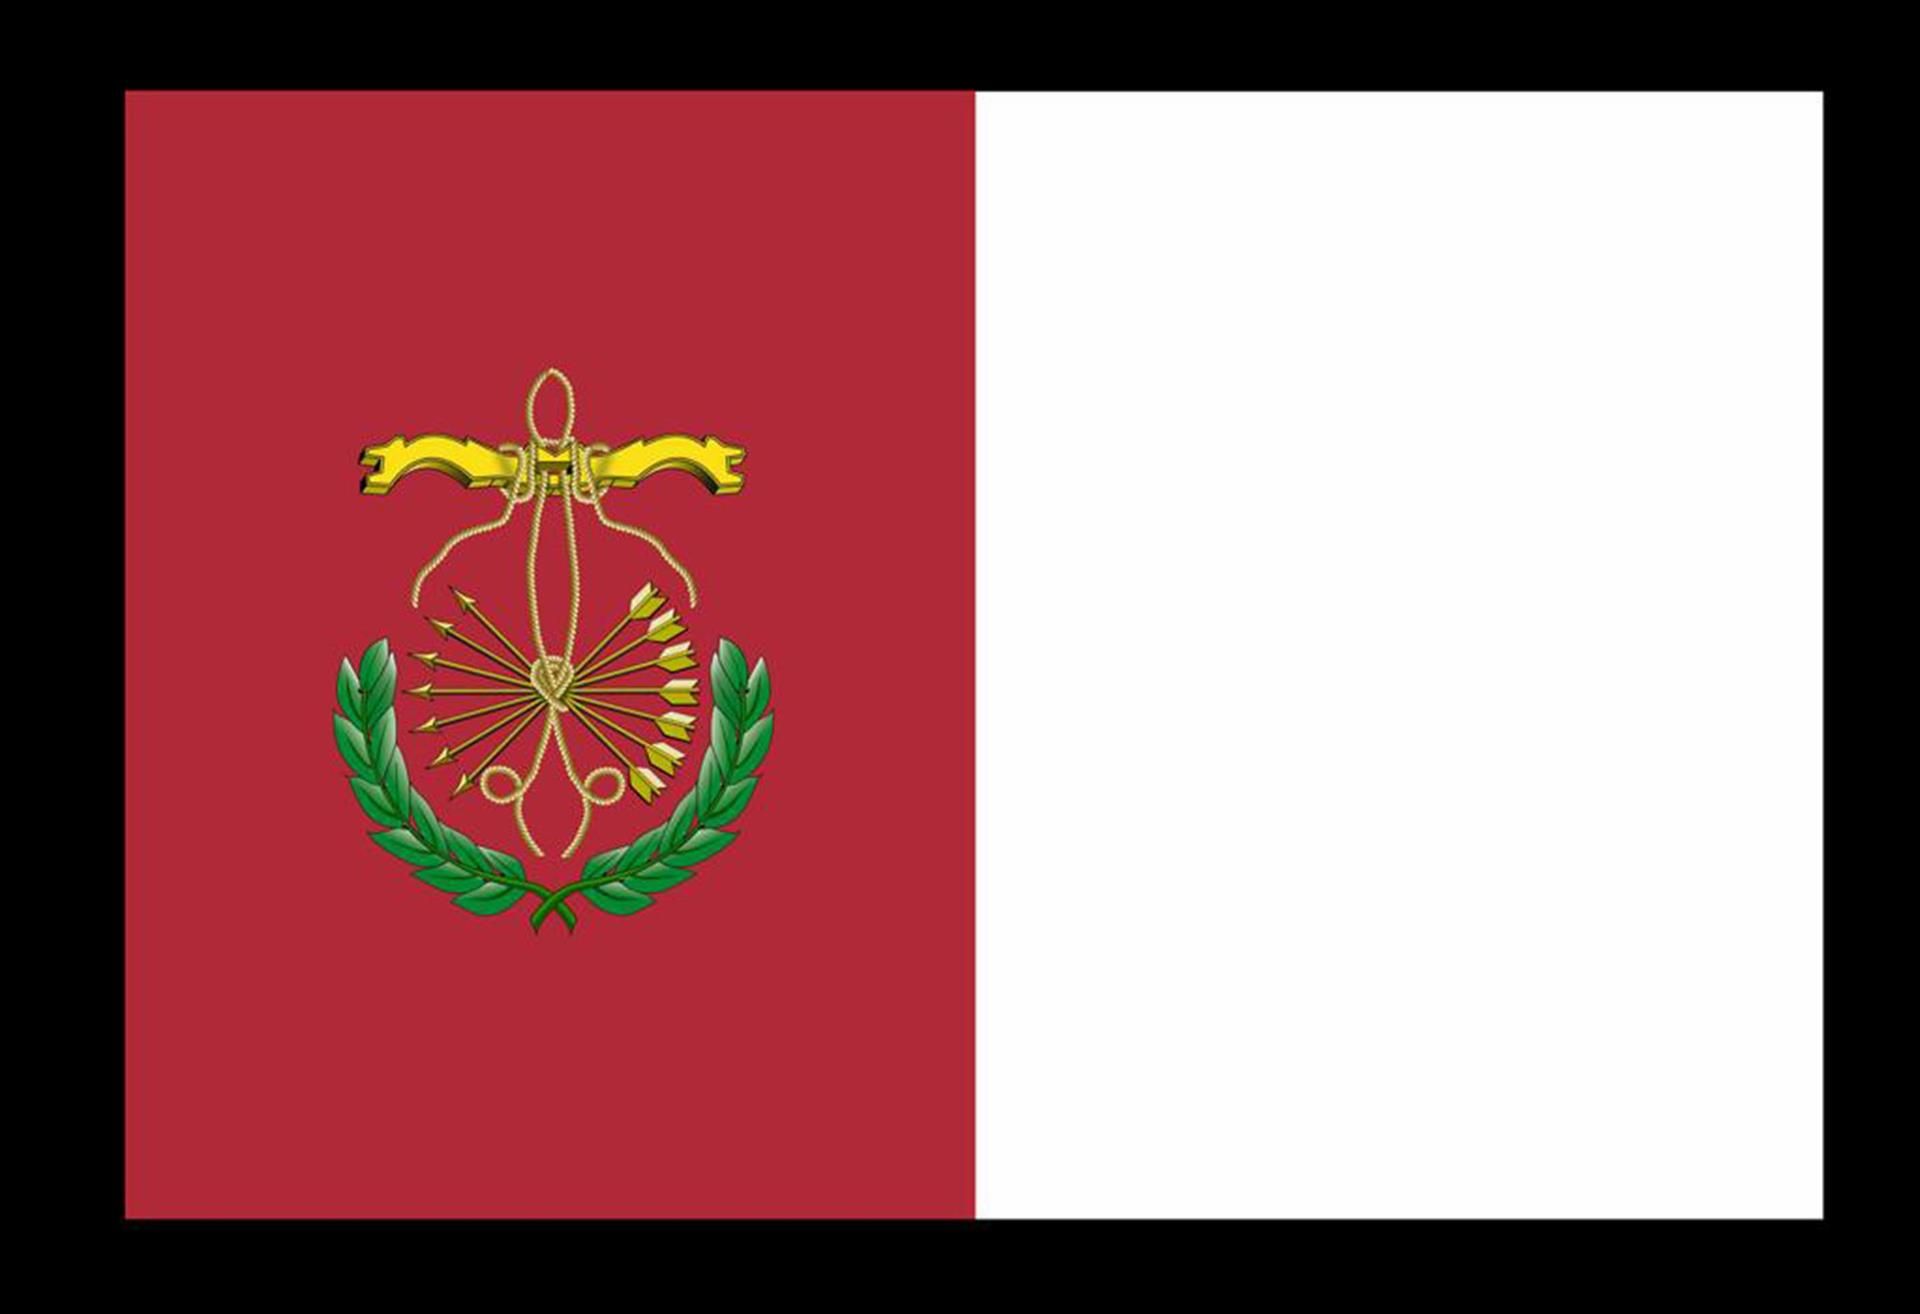 PP y Cs aprueban en pleno la nueva bandera de Guadix: con yugo y flechas.